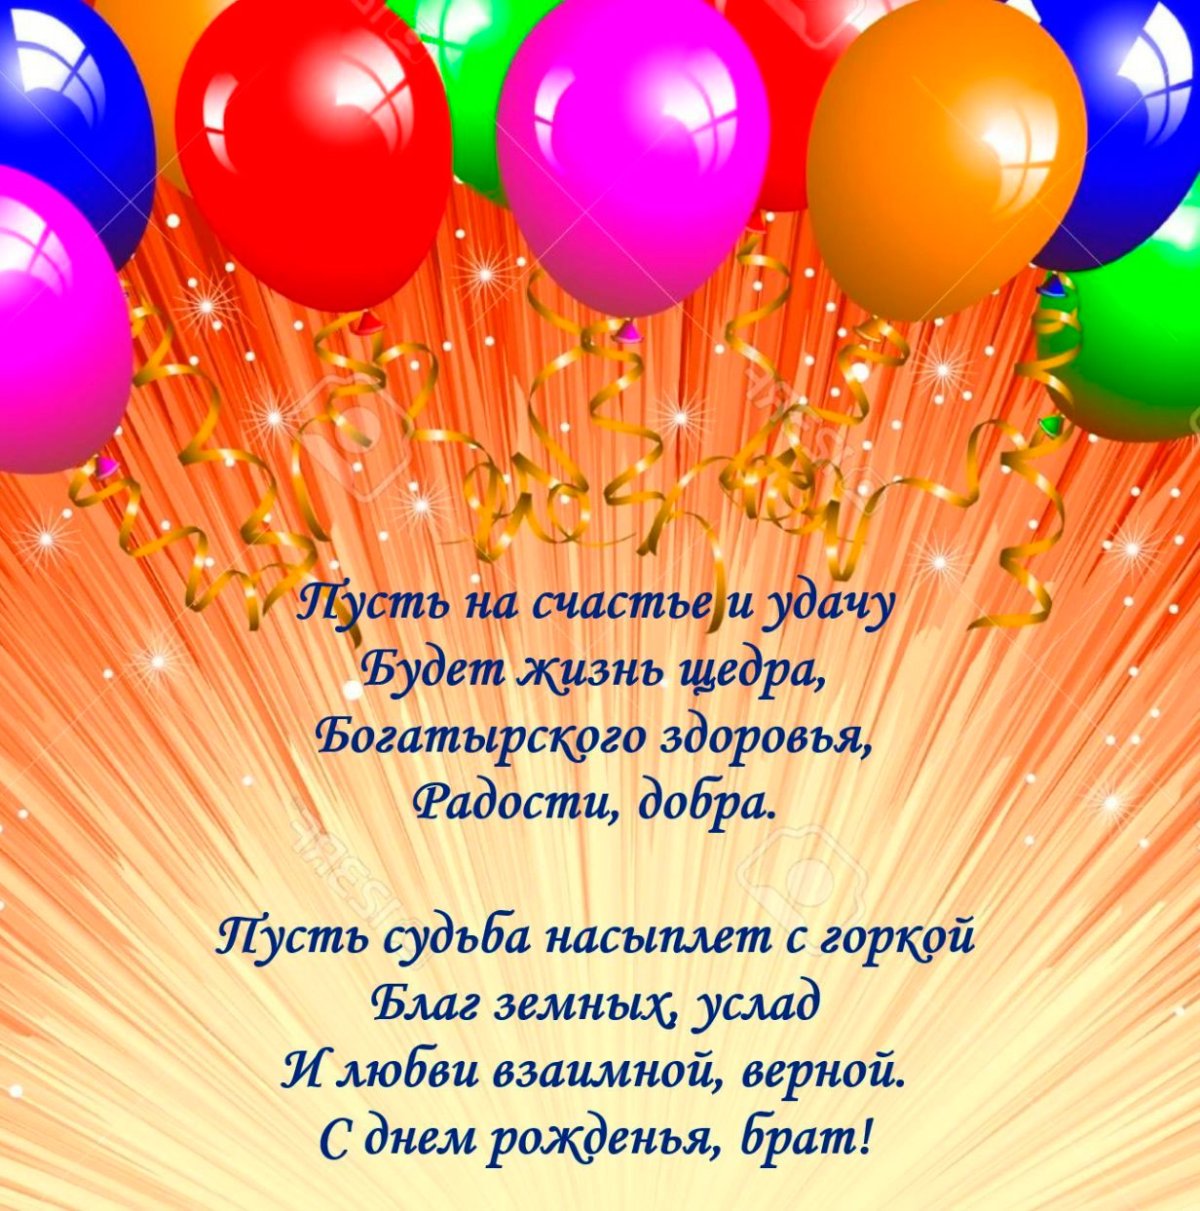 Мерцающая открытка с днем рождения брату- Скачать бесплатно на ремонты-бмв.рф